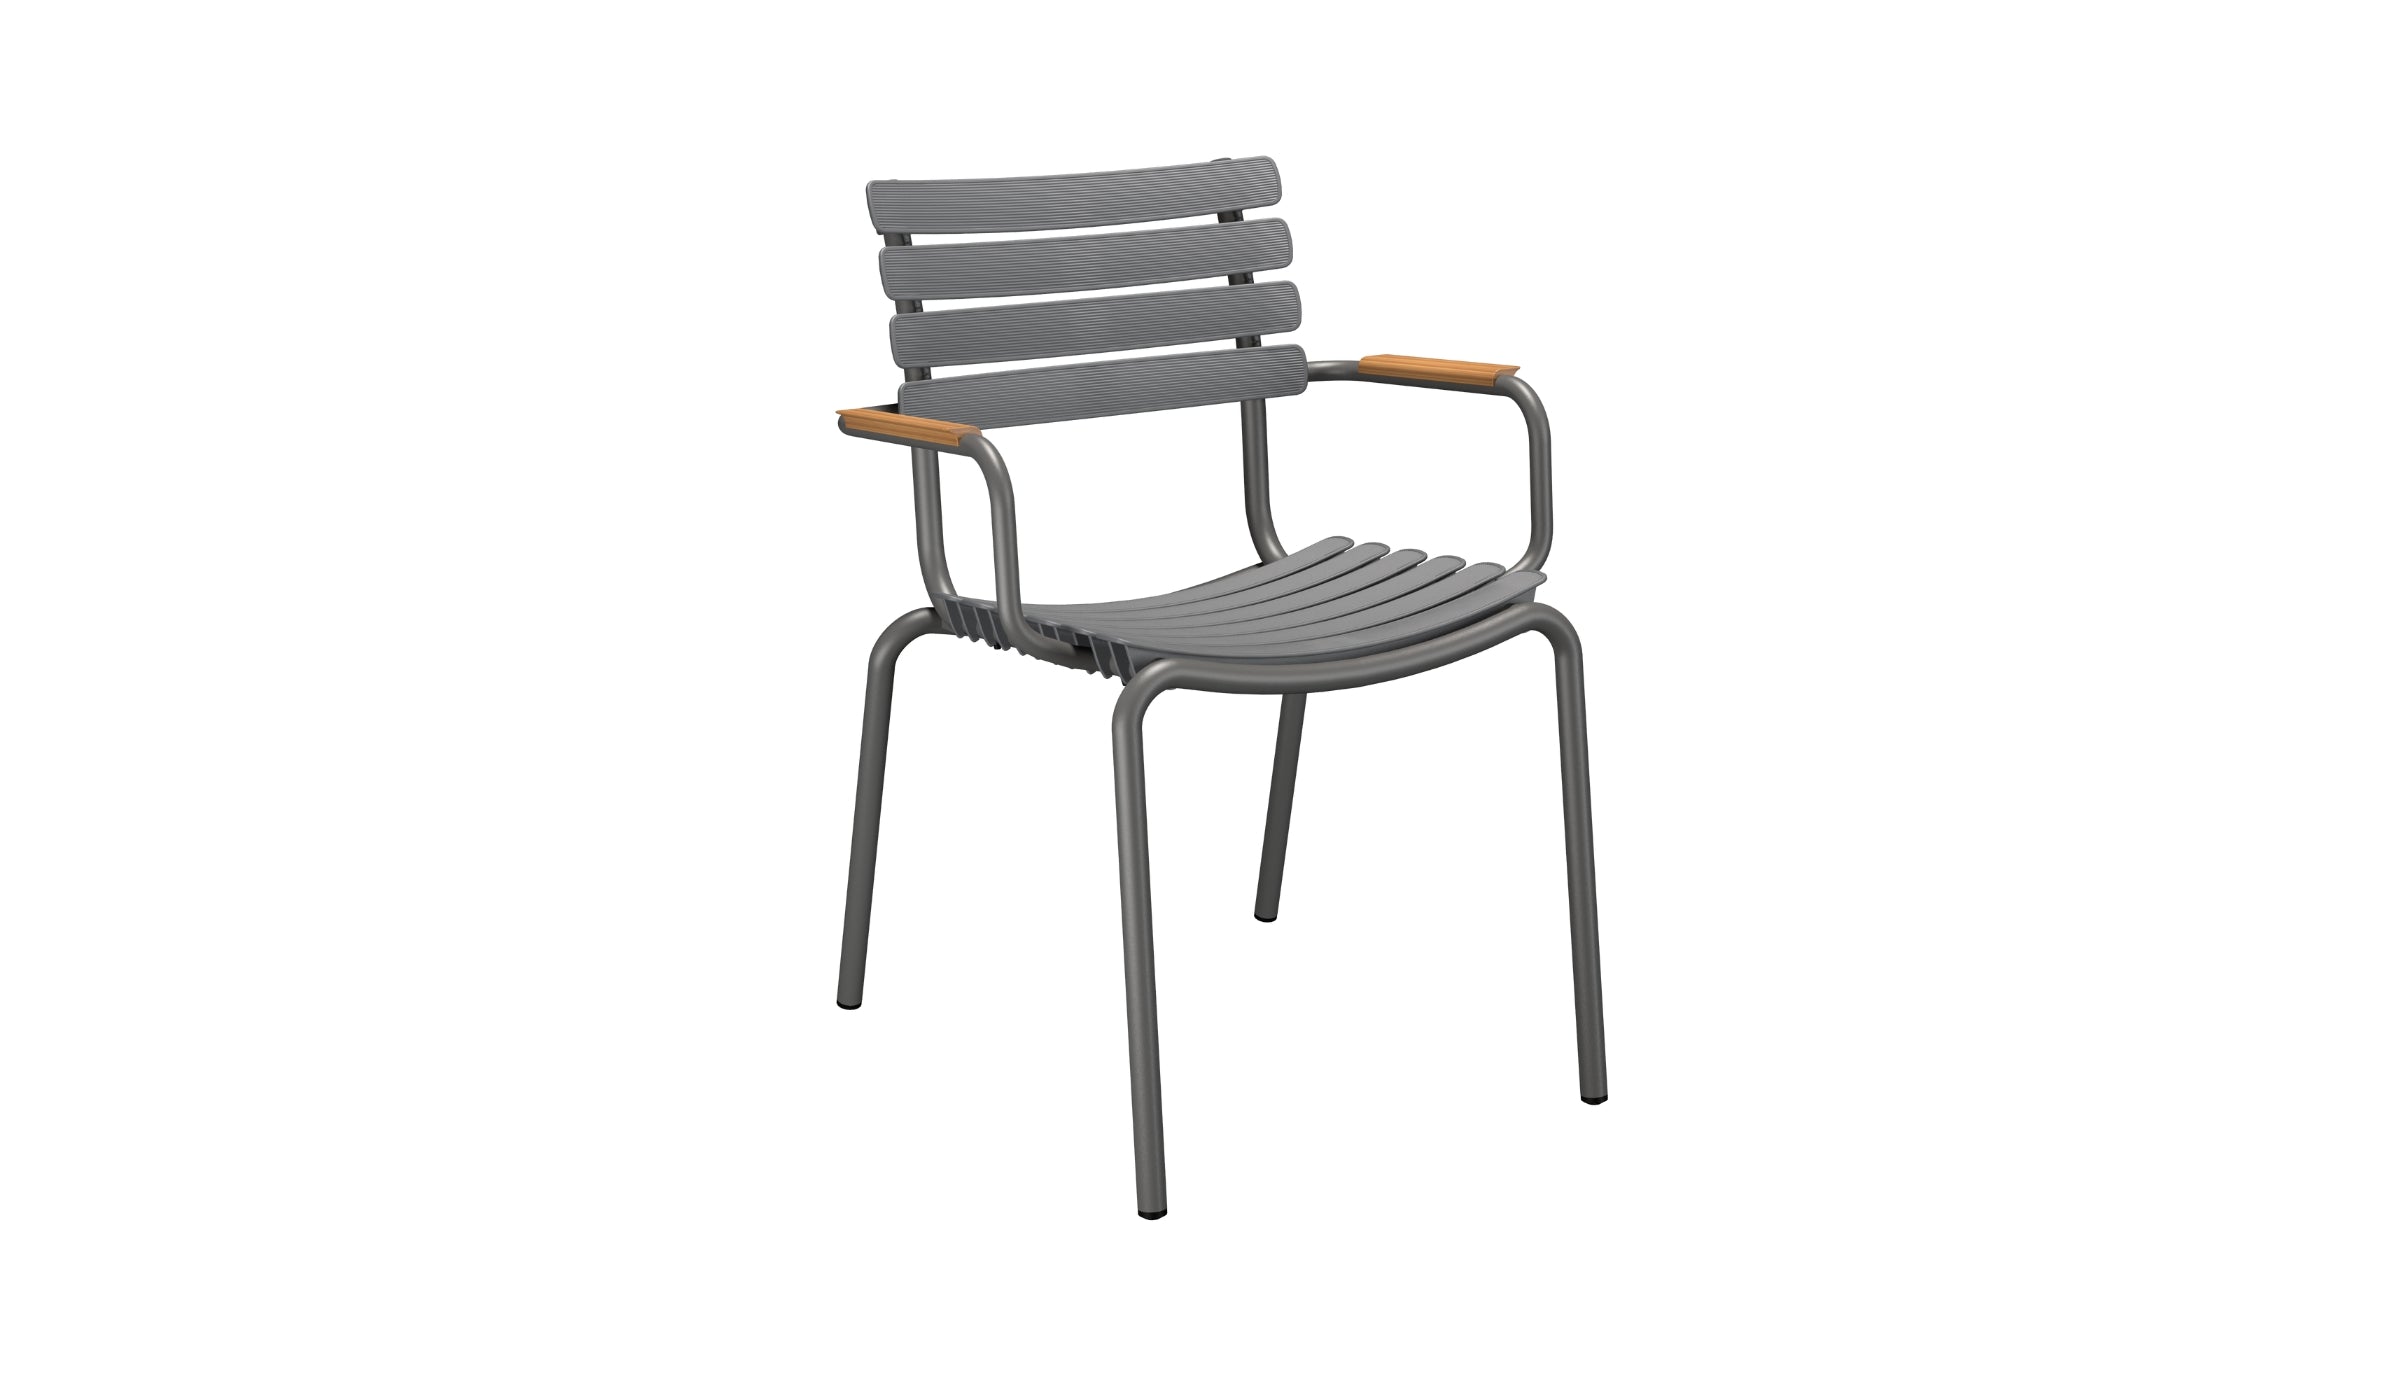 Reclips - Chaise d'extérieur en aluminium et plastique recyclé avec accoudoirs en bambou, gris